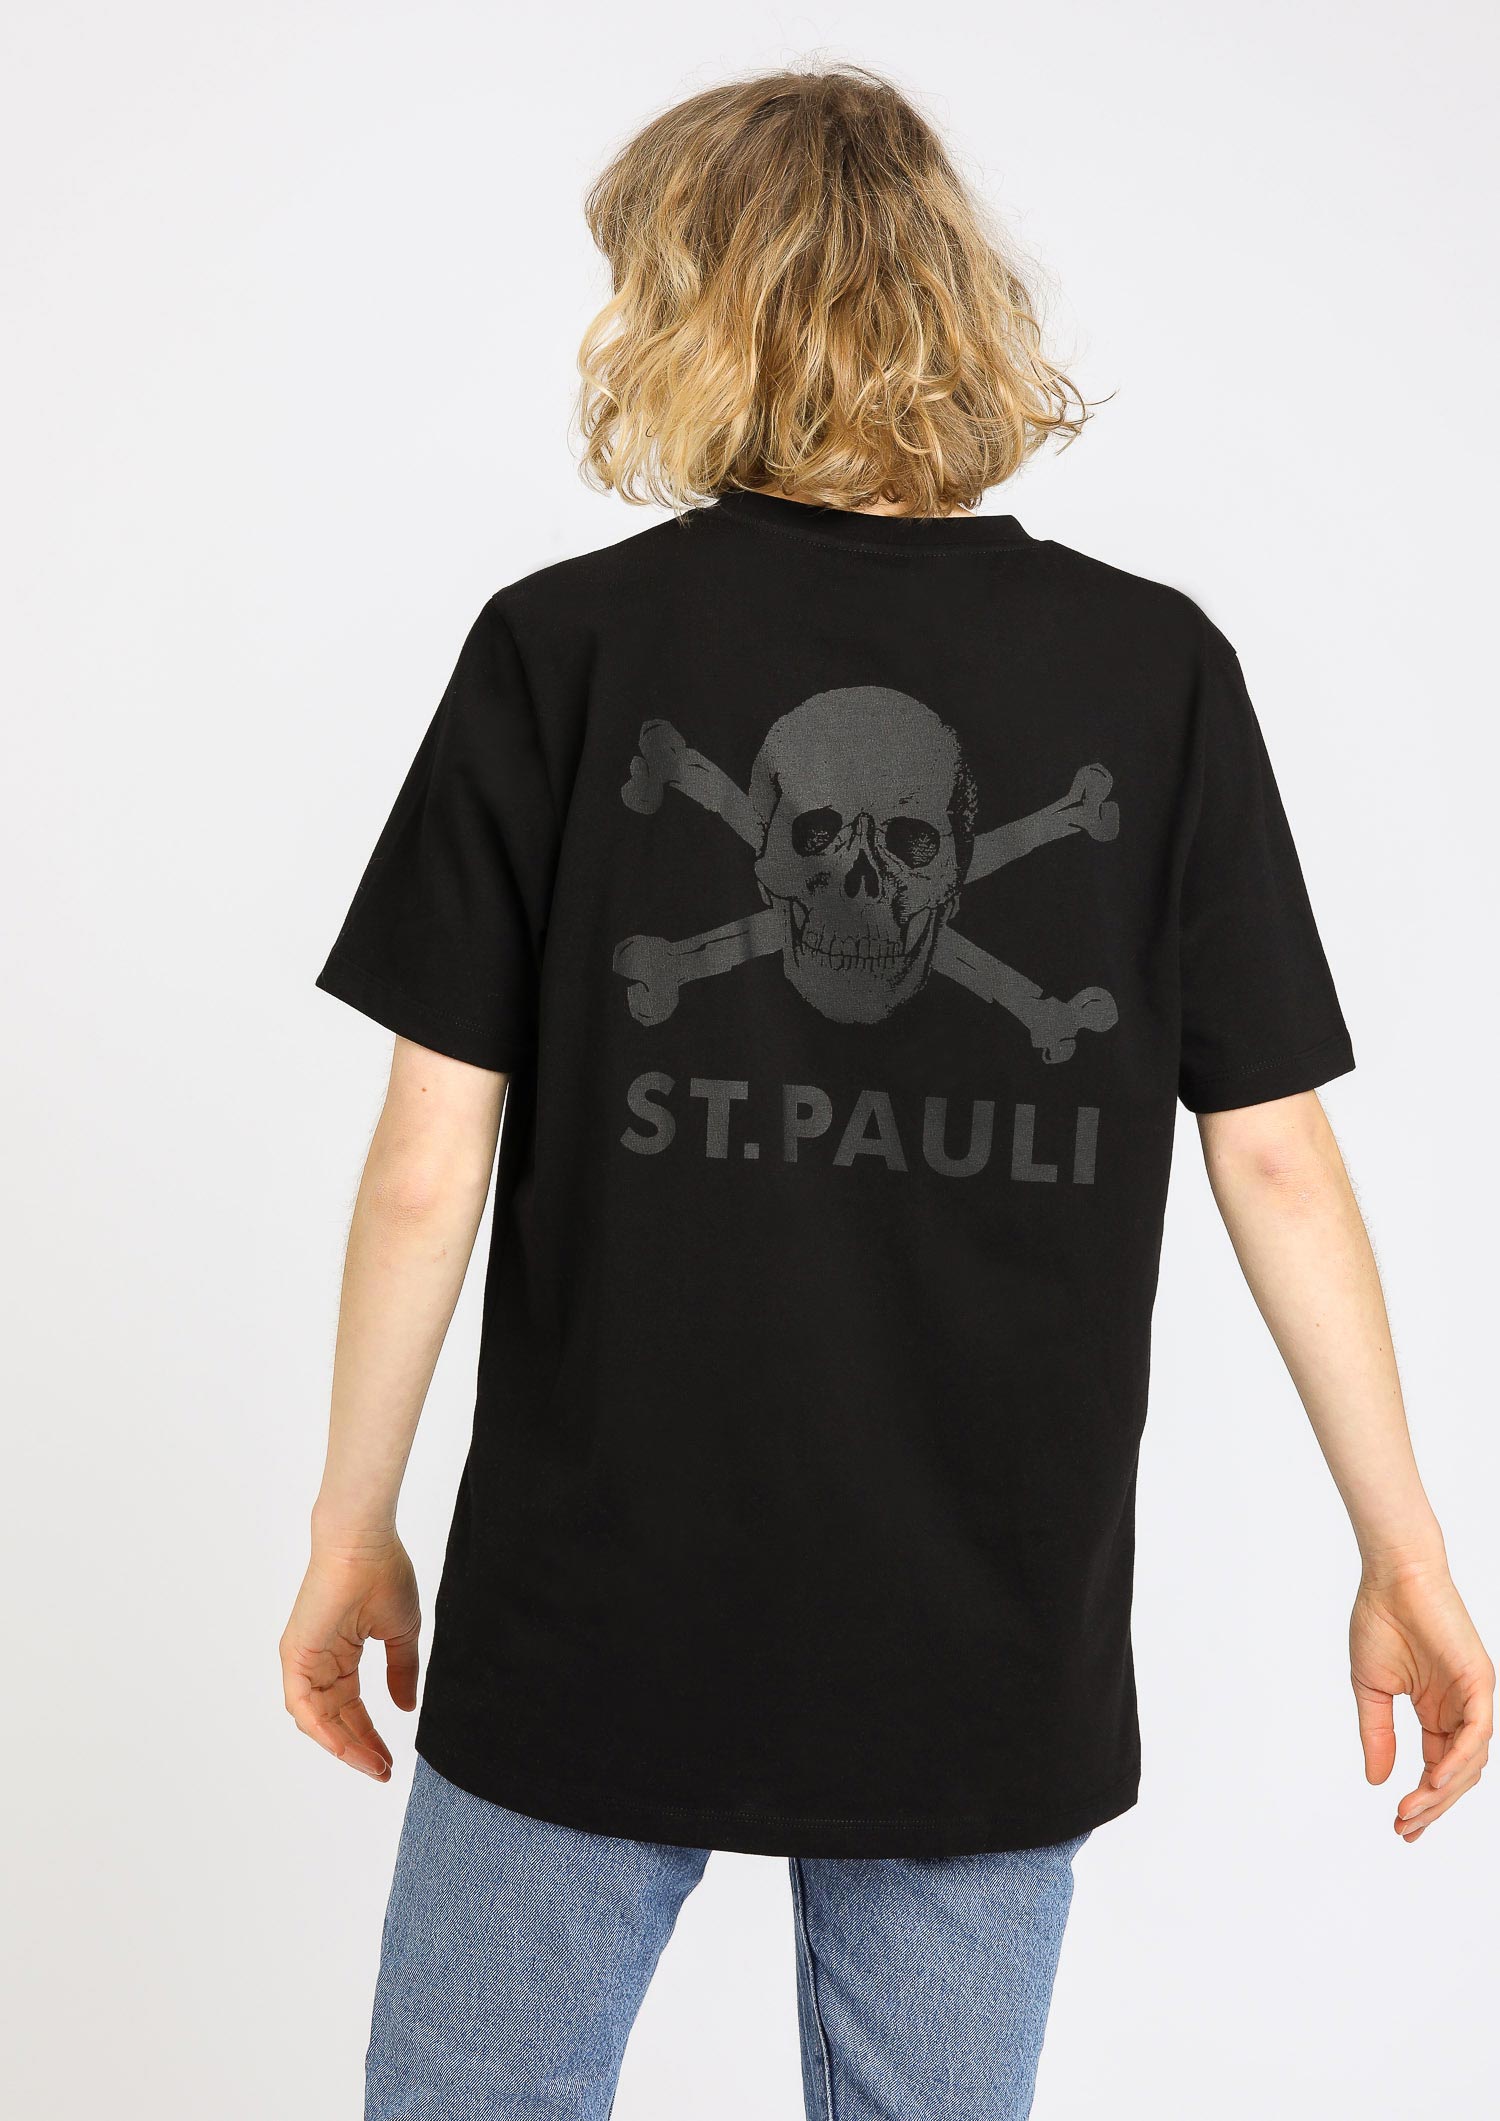 T-Shirt "All Black" Skull and Crossbones 